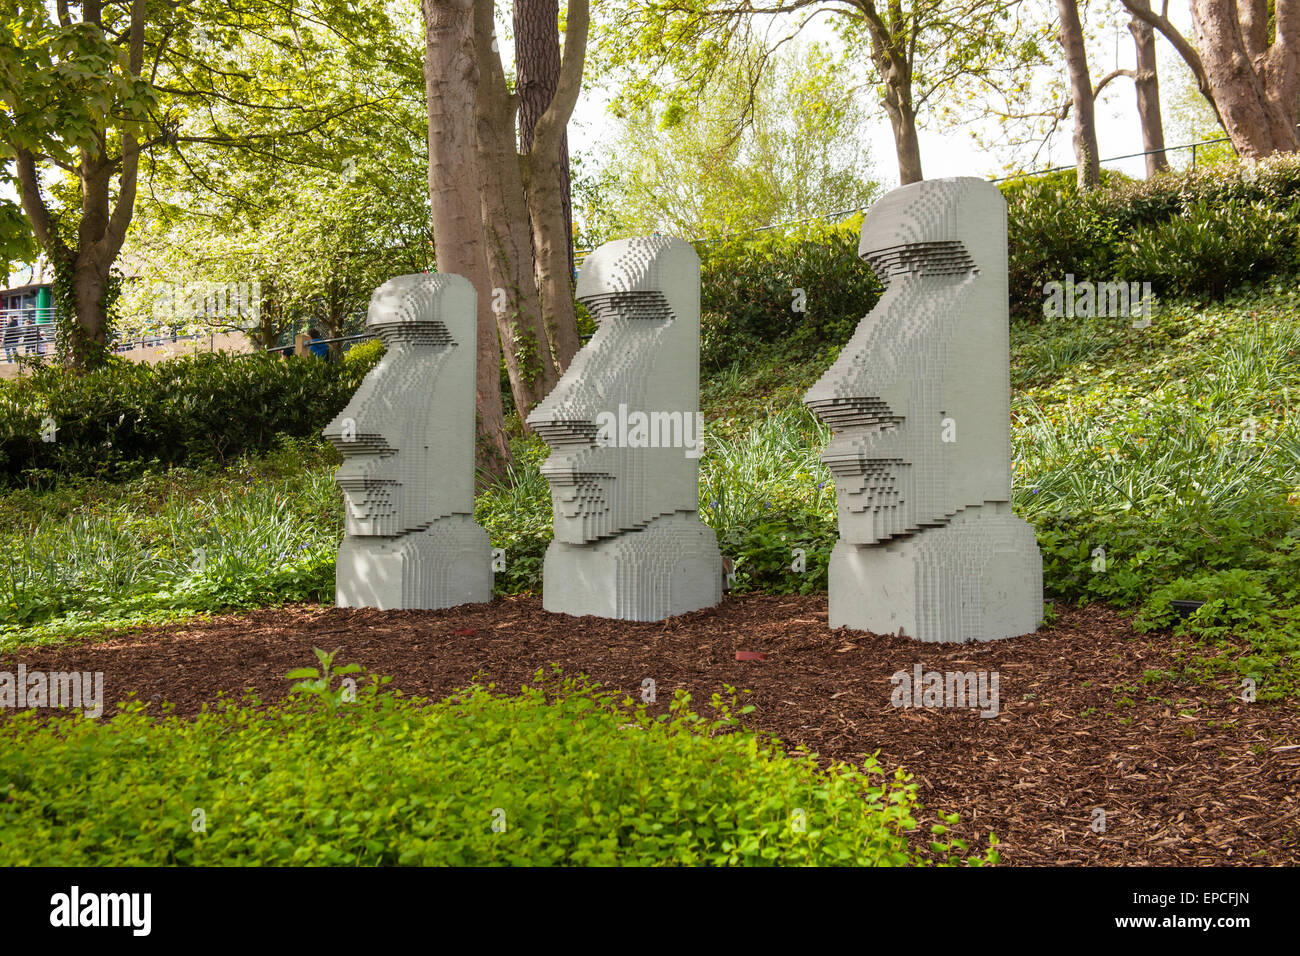 Statuts de l'île de Pâques au Parc Legoland Windsor, London, Angleterre, Royaume-Uni. Banque D'Images